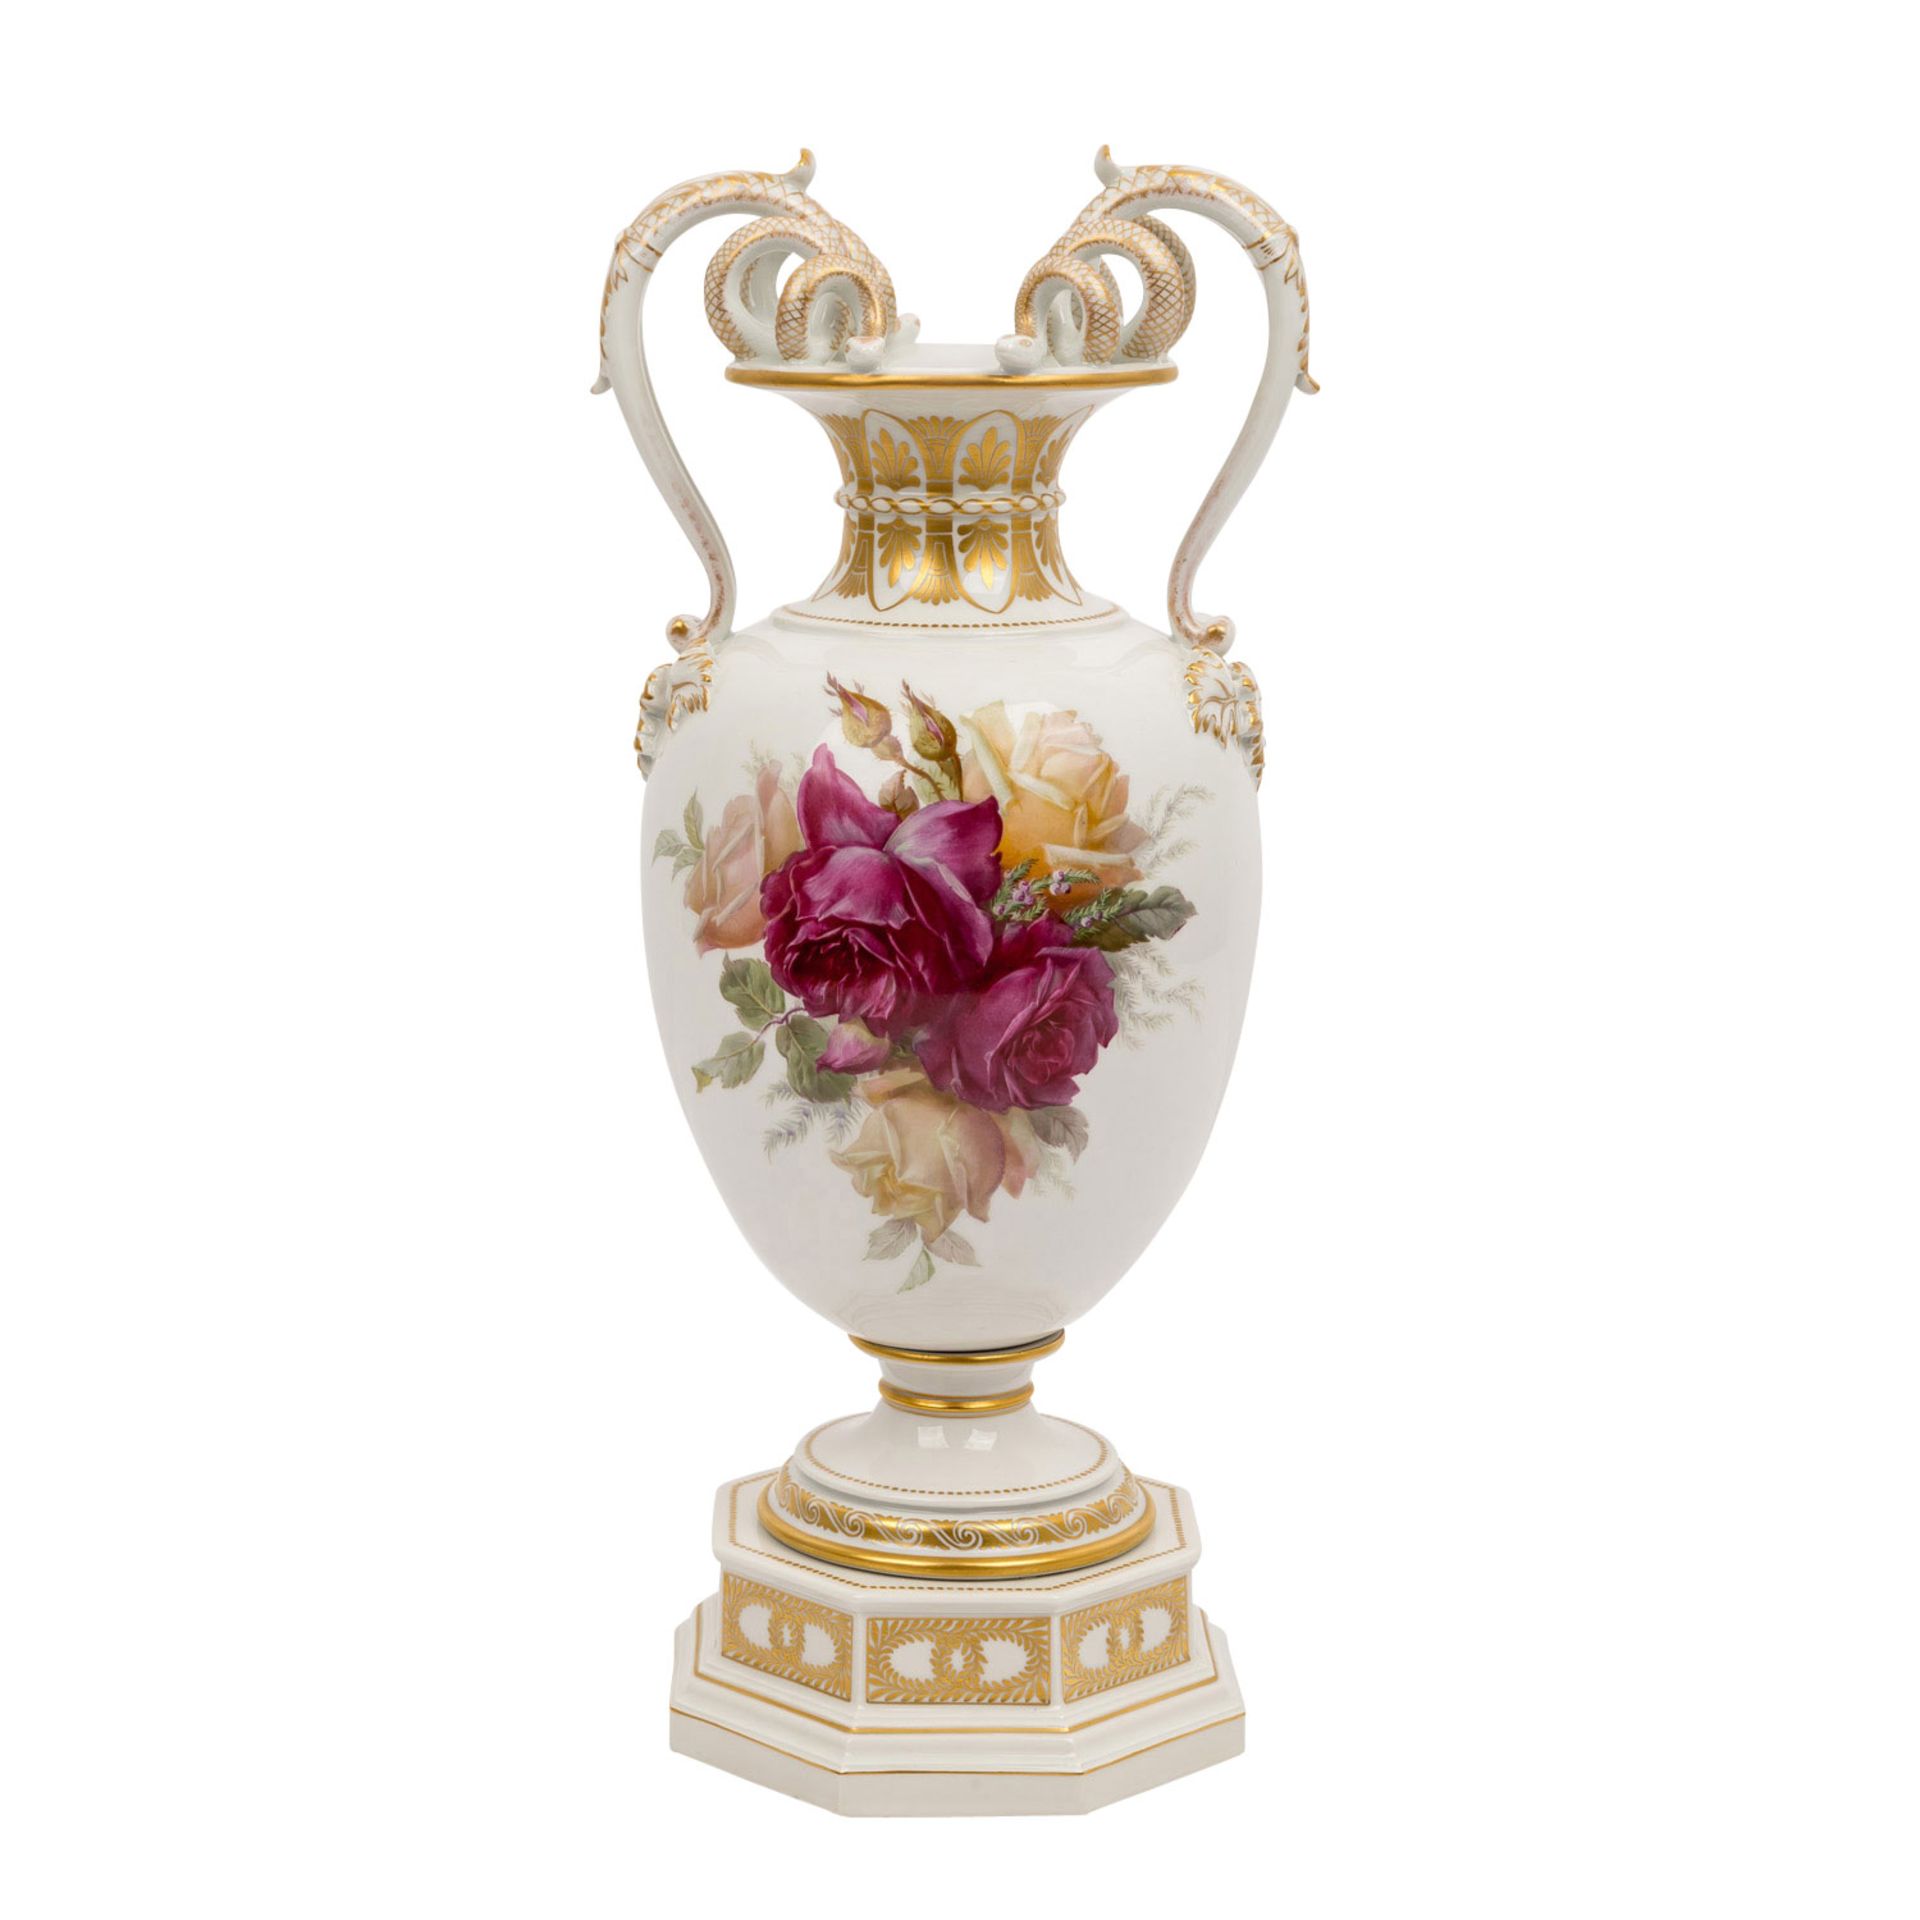 KPM "Vase mit Weichmalerei" 1913Berlin, Porzellan, polychromer Aufglasurdekor, reliefierte